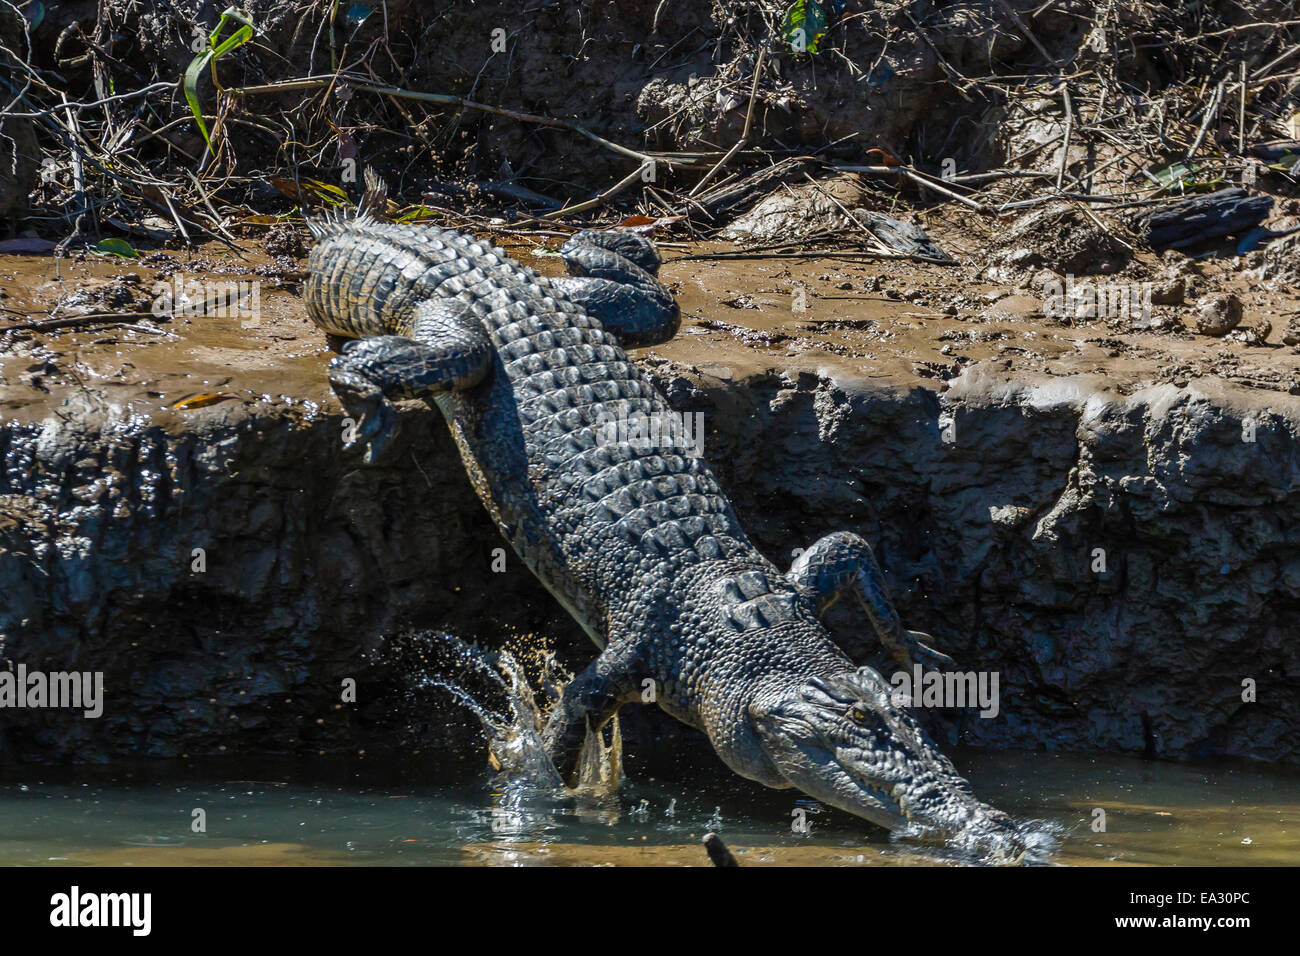 Adultos cocodrilo de agua salada (Crocodylus porosus), a orillas del río Daintree, selva tropical Daintree, Queensland, Australia Foto de stock